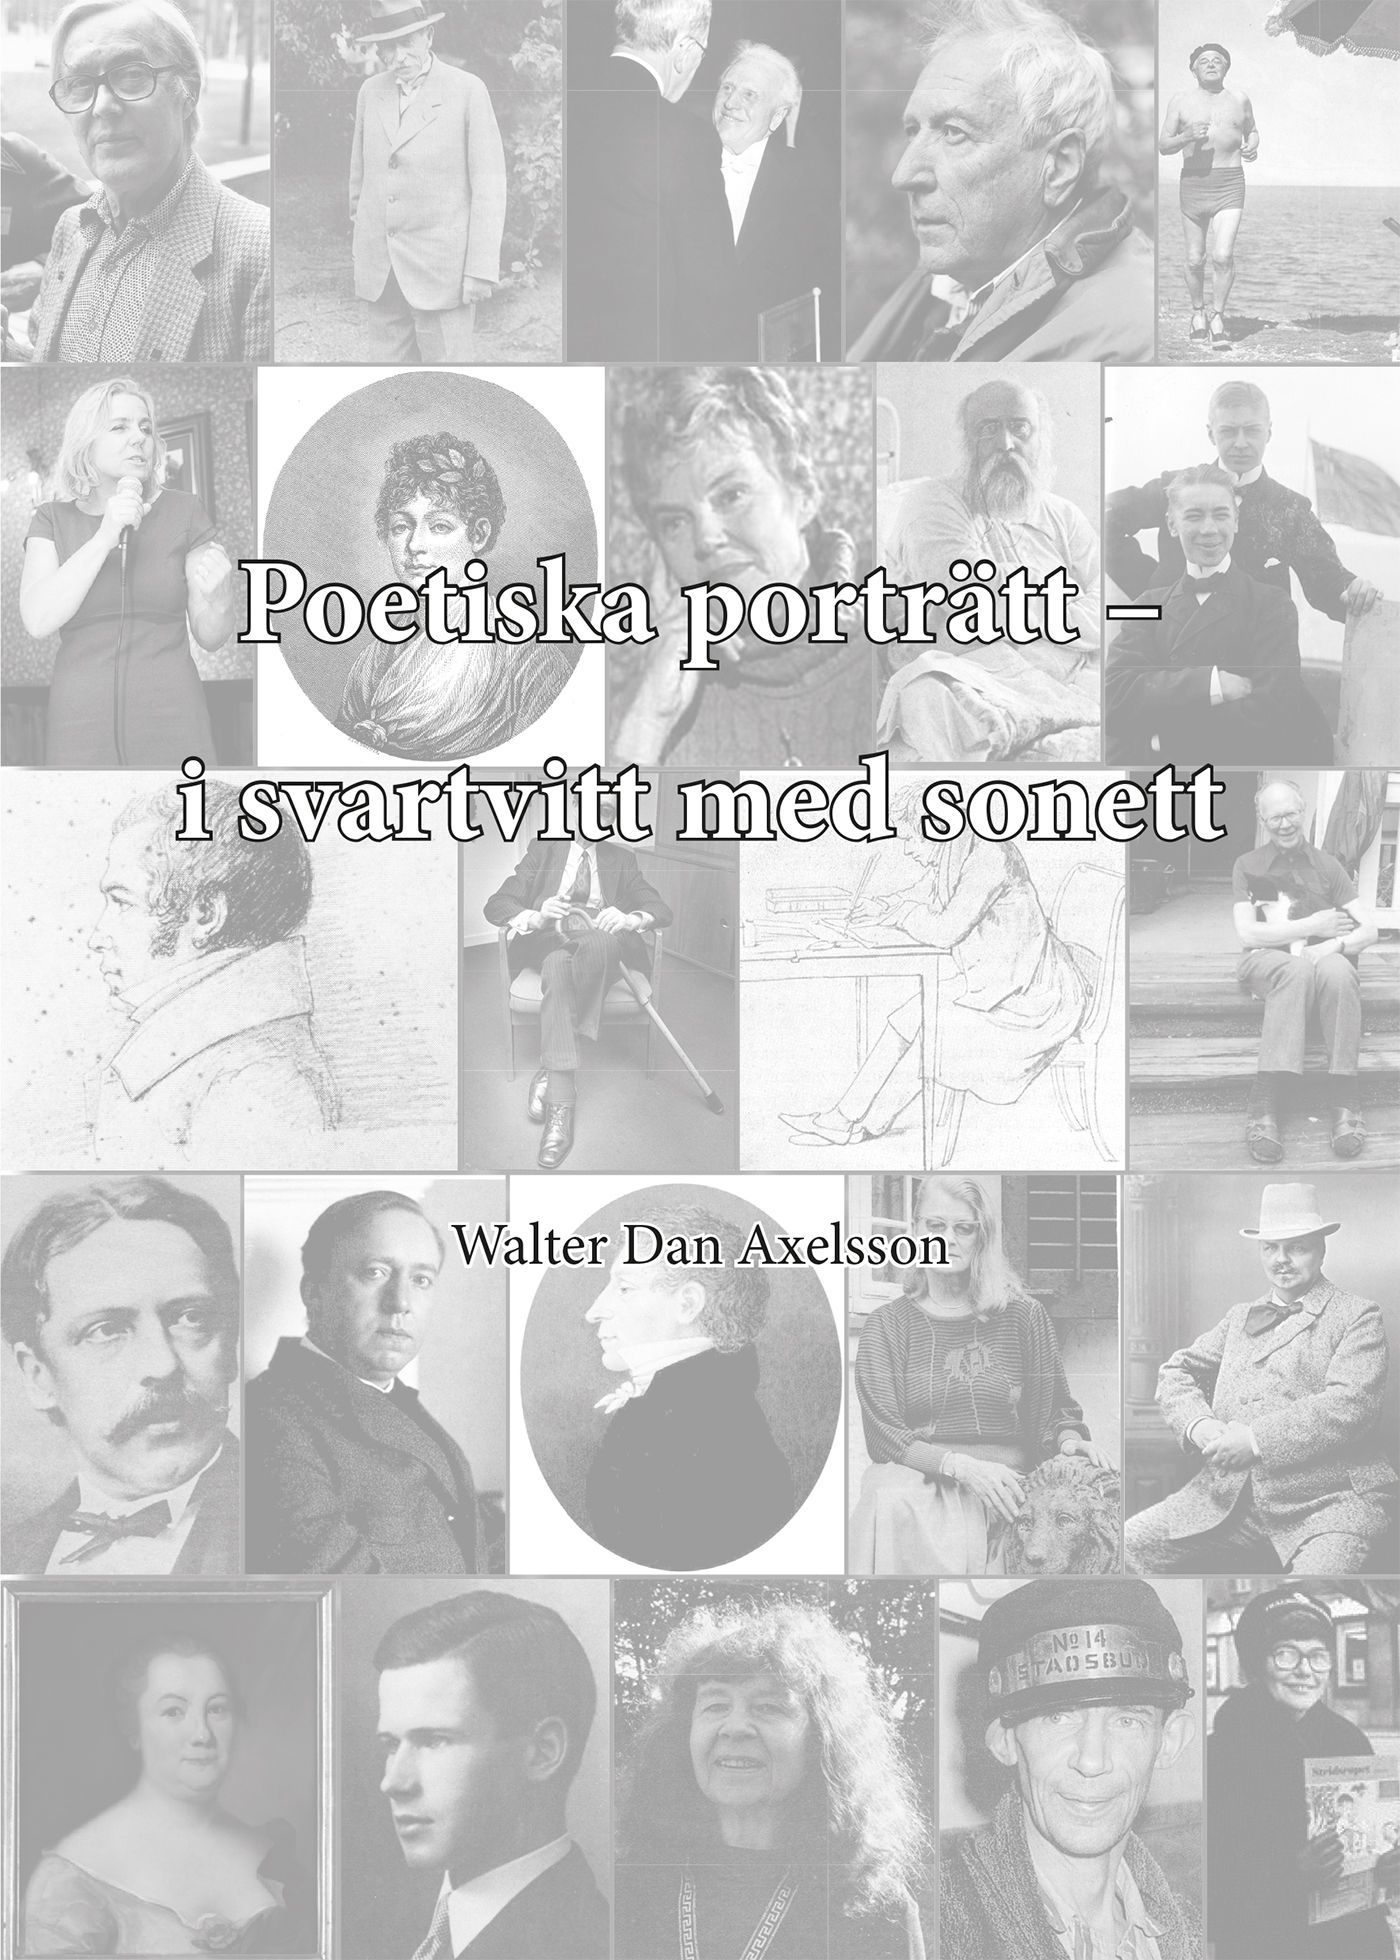 Poetiska porträtt – i svartvitt med sonett, eBook by Walter Dan Axelsson